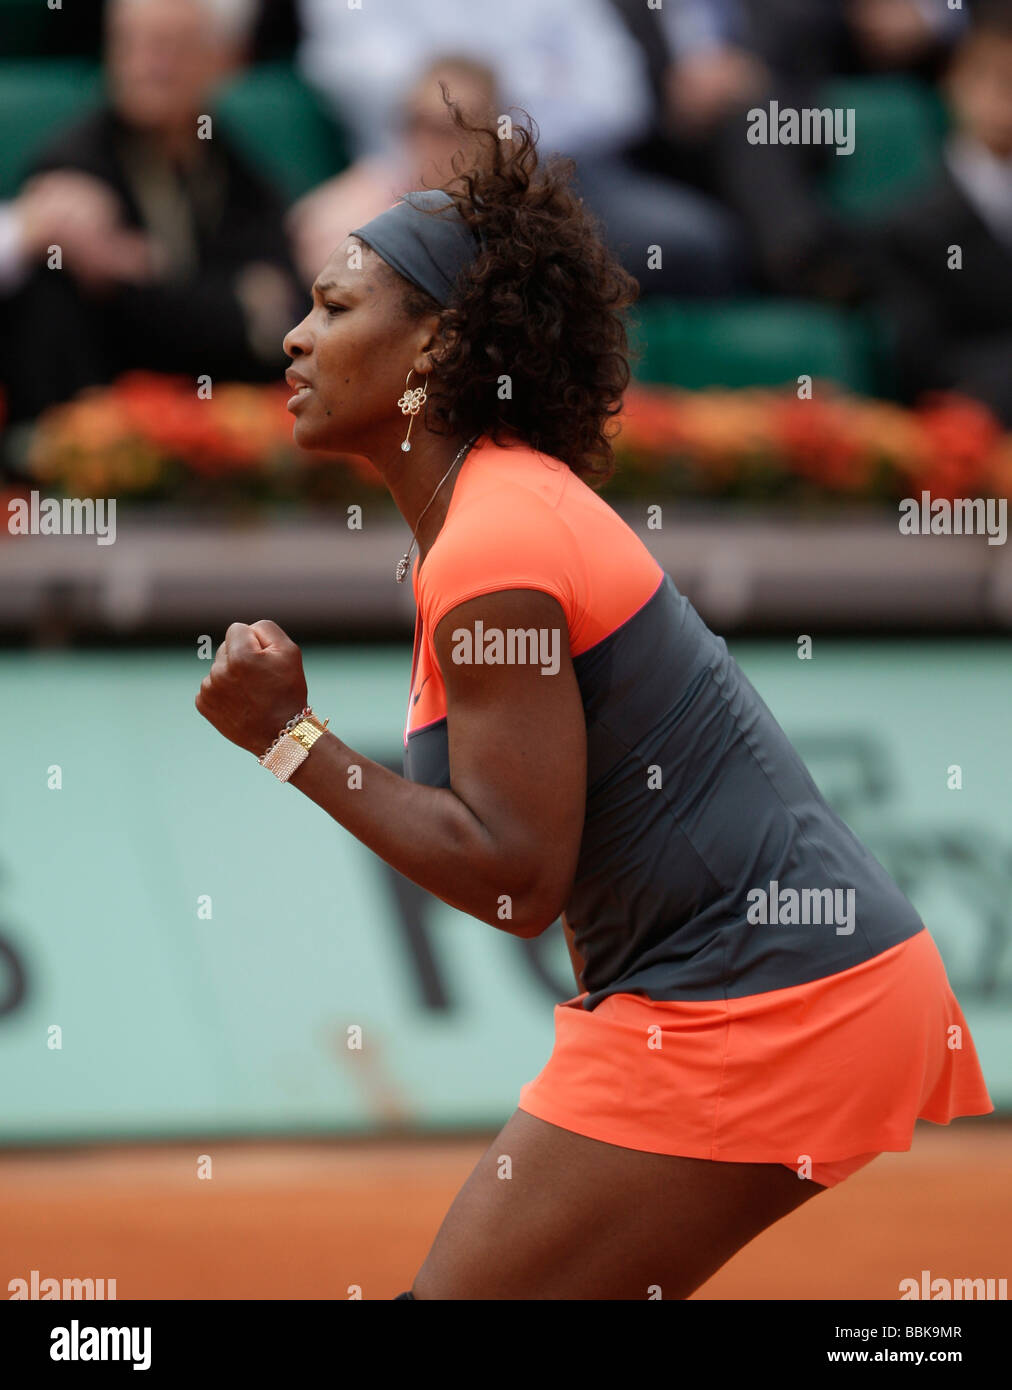 Joueur de tennis Serena Williams célèbre son victoire à l'Open de France 2009 Banque D'Images